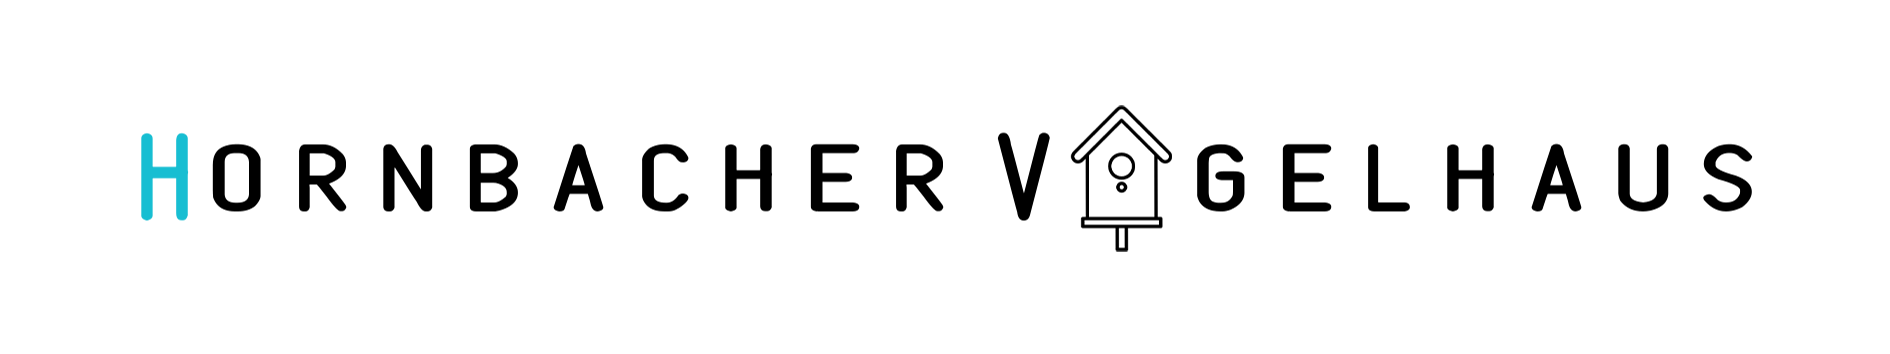 Ferienhaus Logo Dark